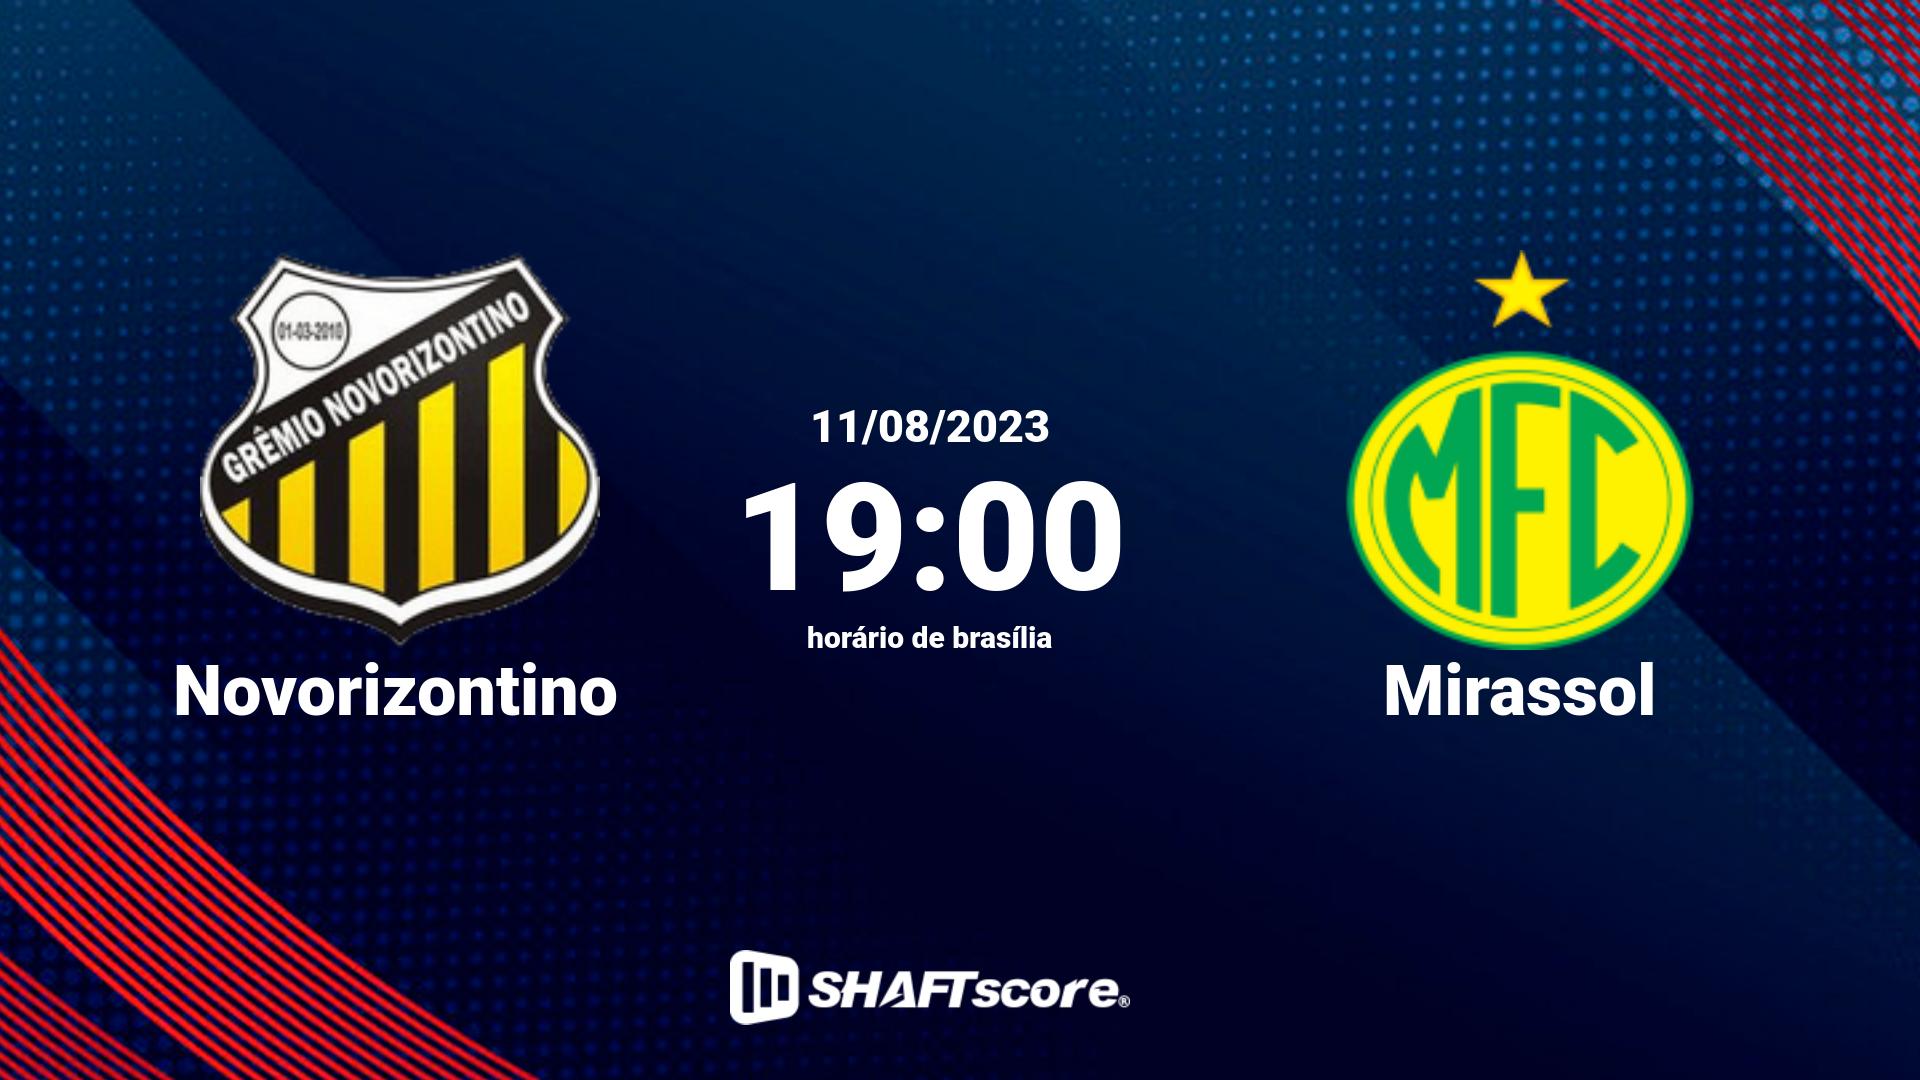 Estatísticas do jogo Novorizontino vs Mirassol 11.08 19:00